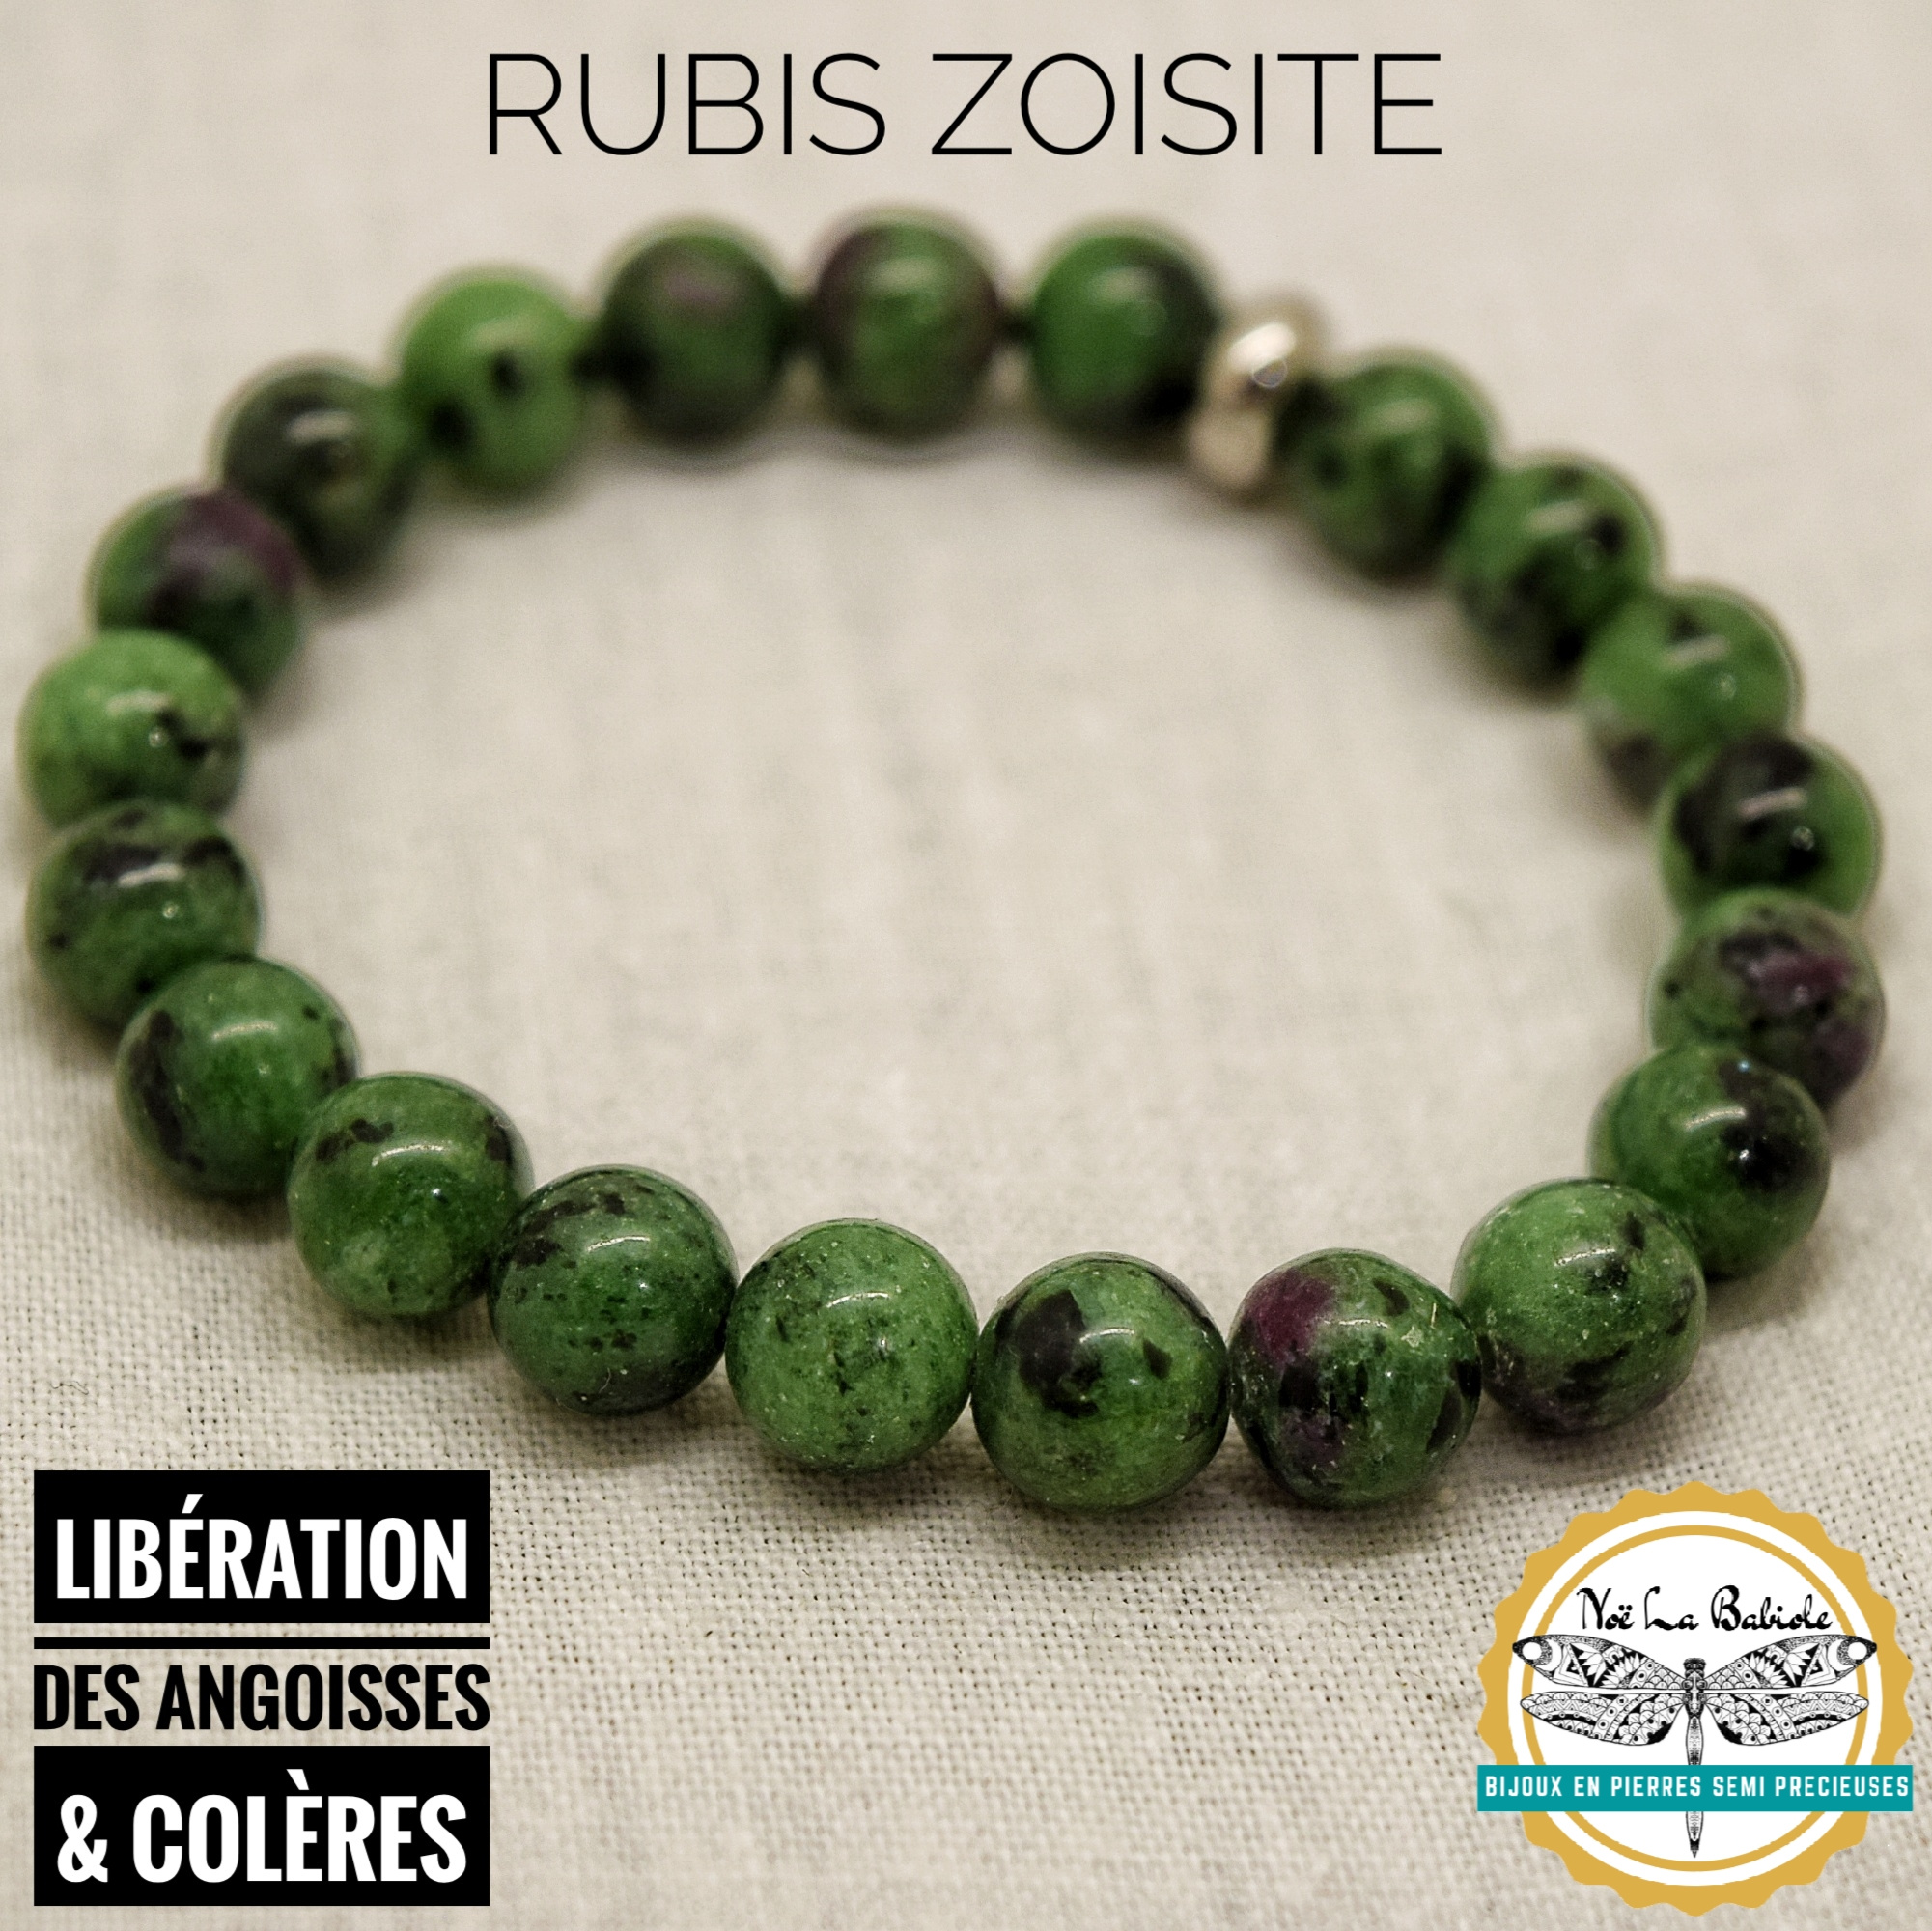 Bracelet Libération des angoisses & colères en Rubis sur Zoïsite